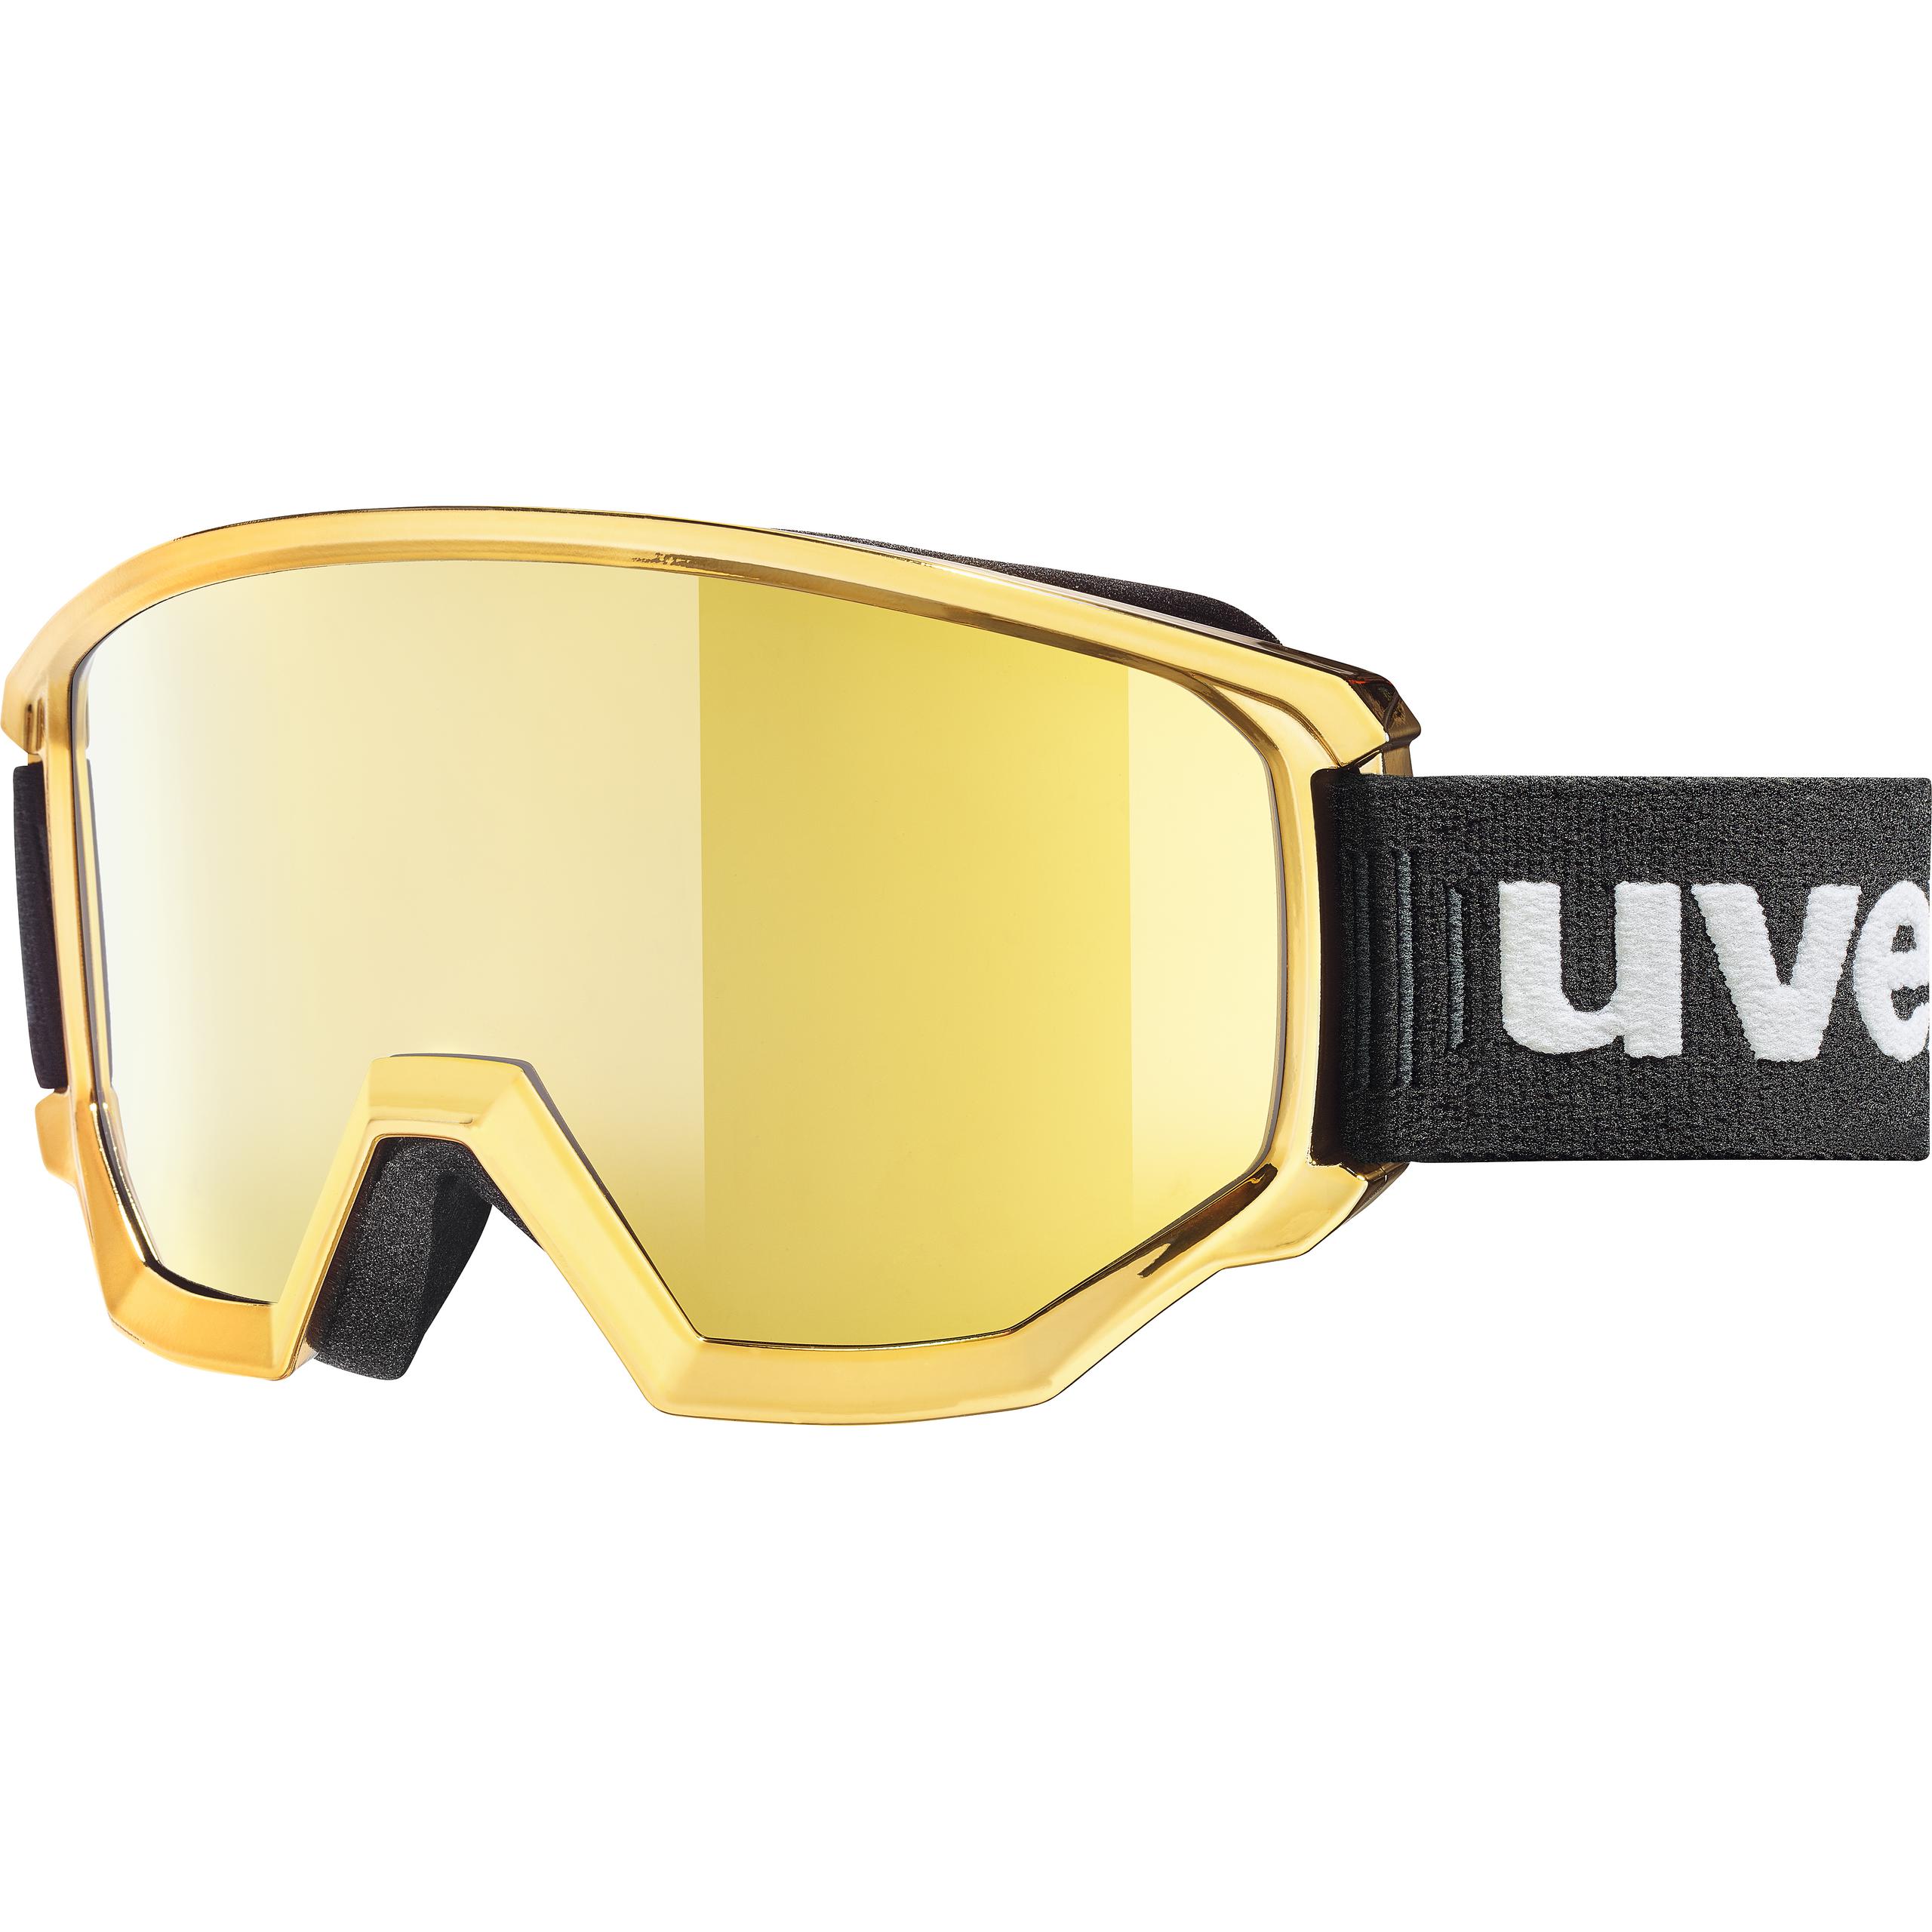 UVEX SPORTIV FM Skibrille Snowboardbrille Collection 2021 NEU !!! 